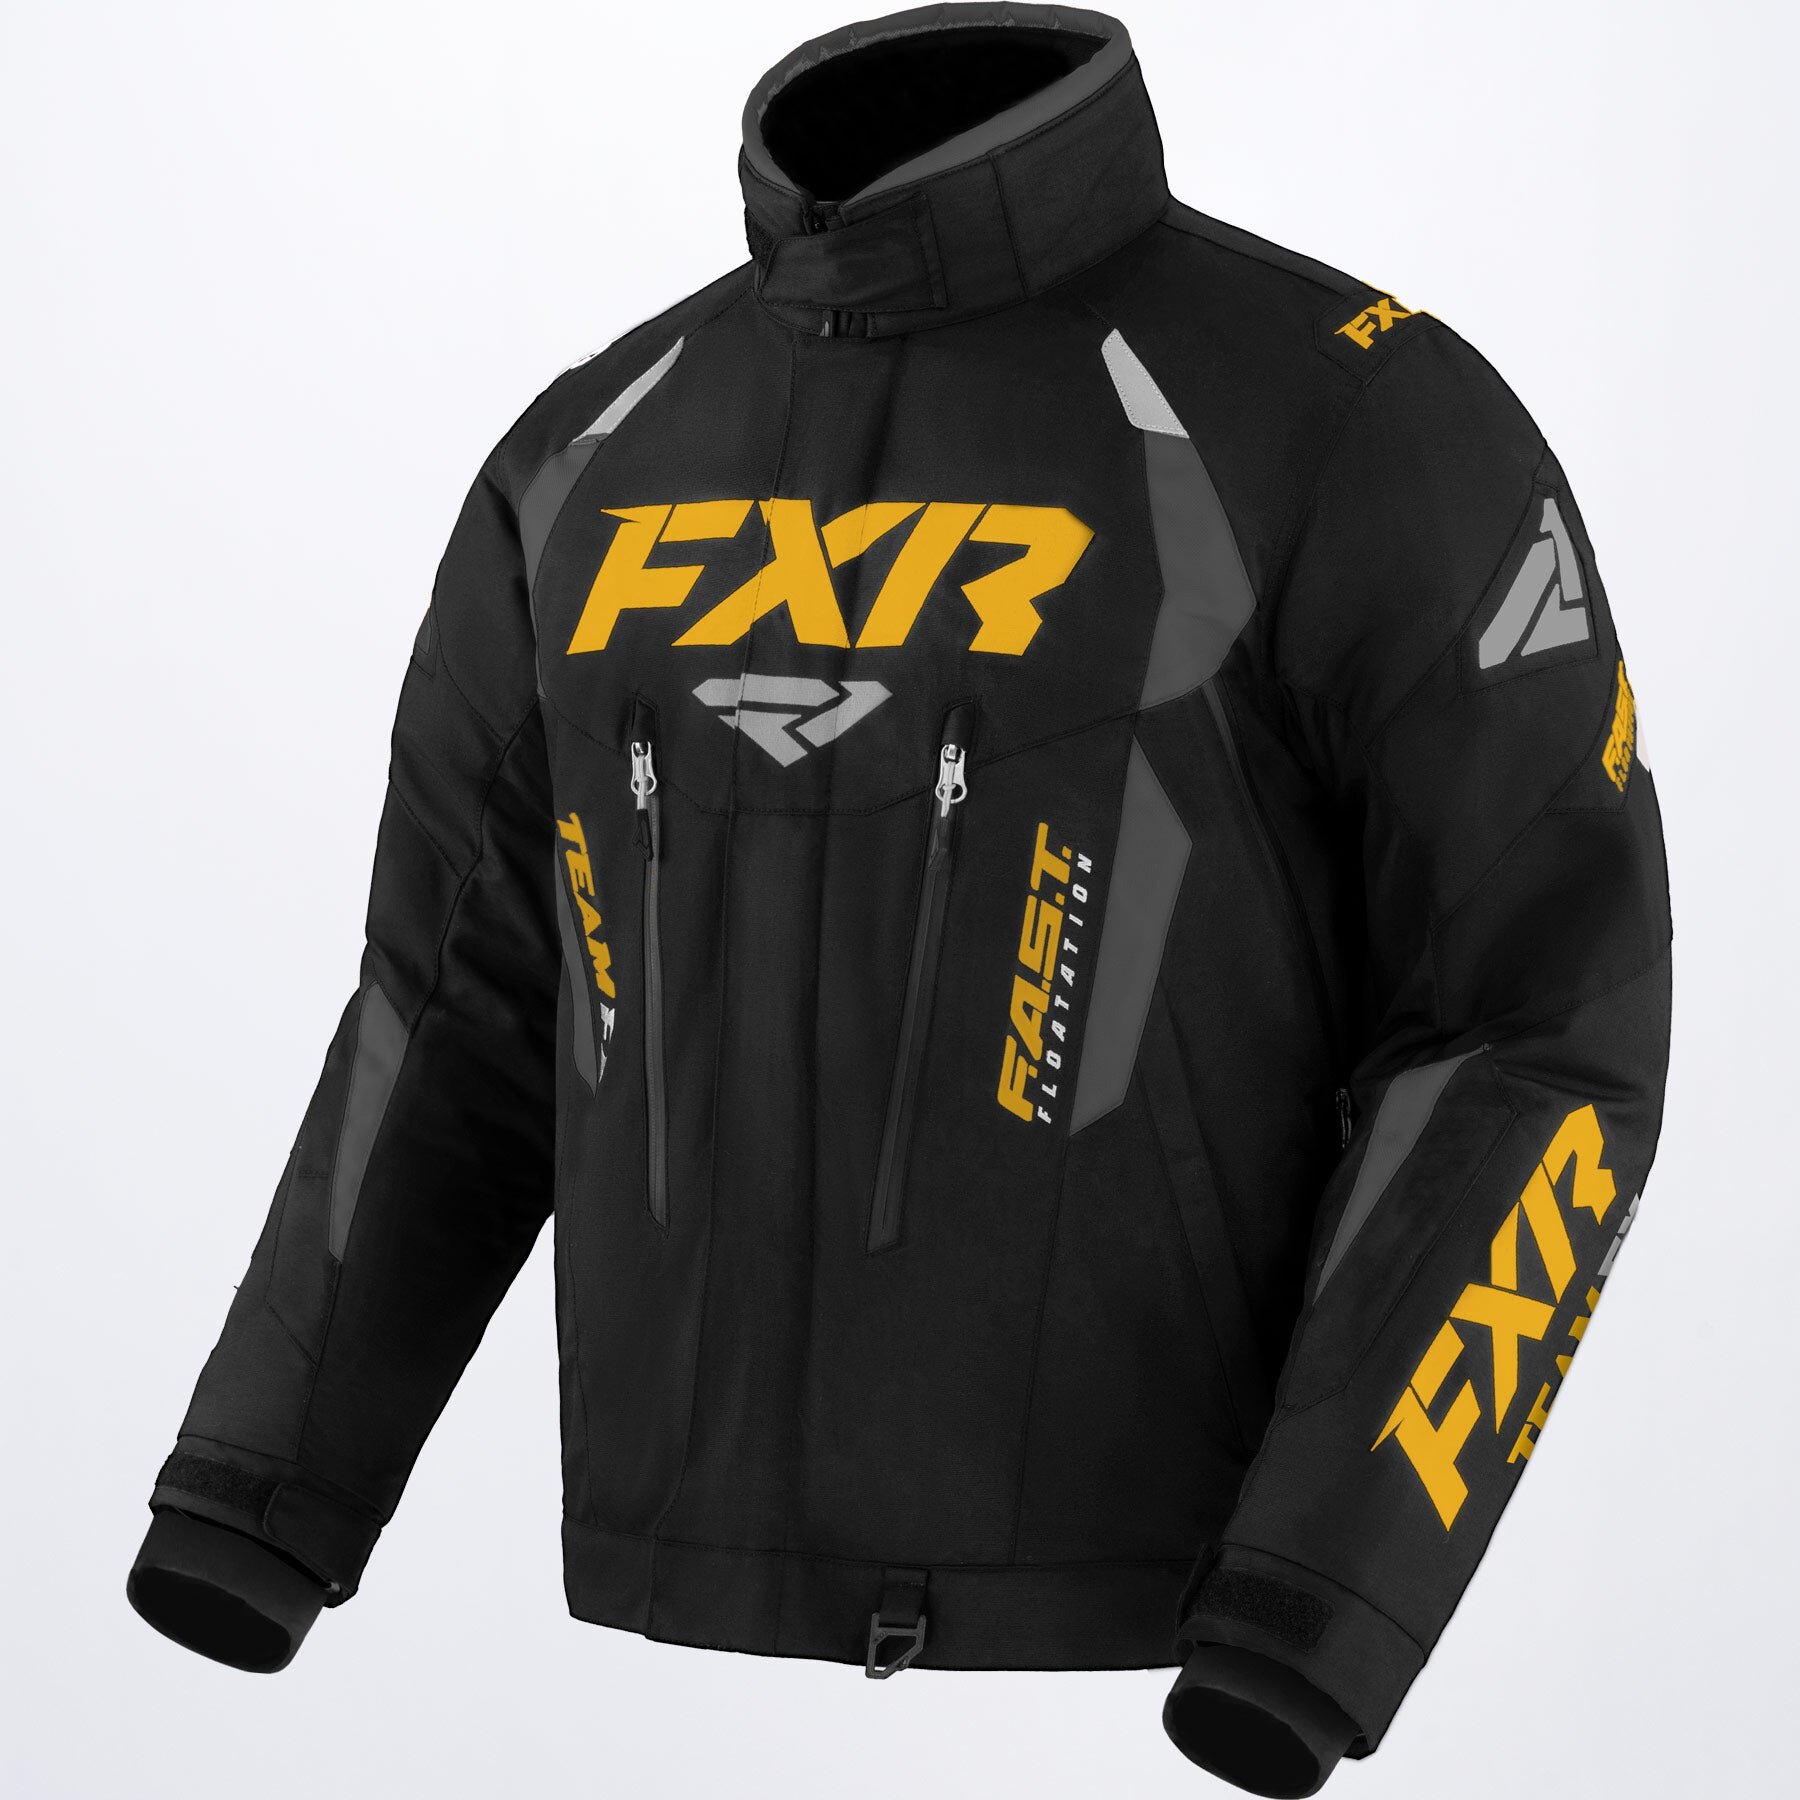 Men's Team FX Jacket S Black Ops